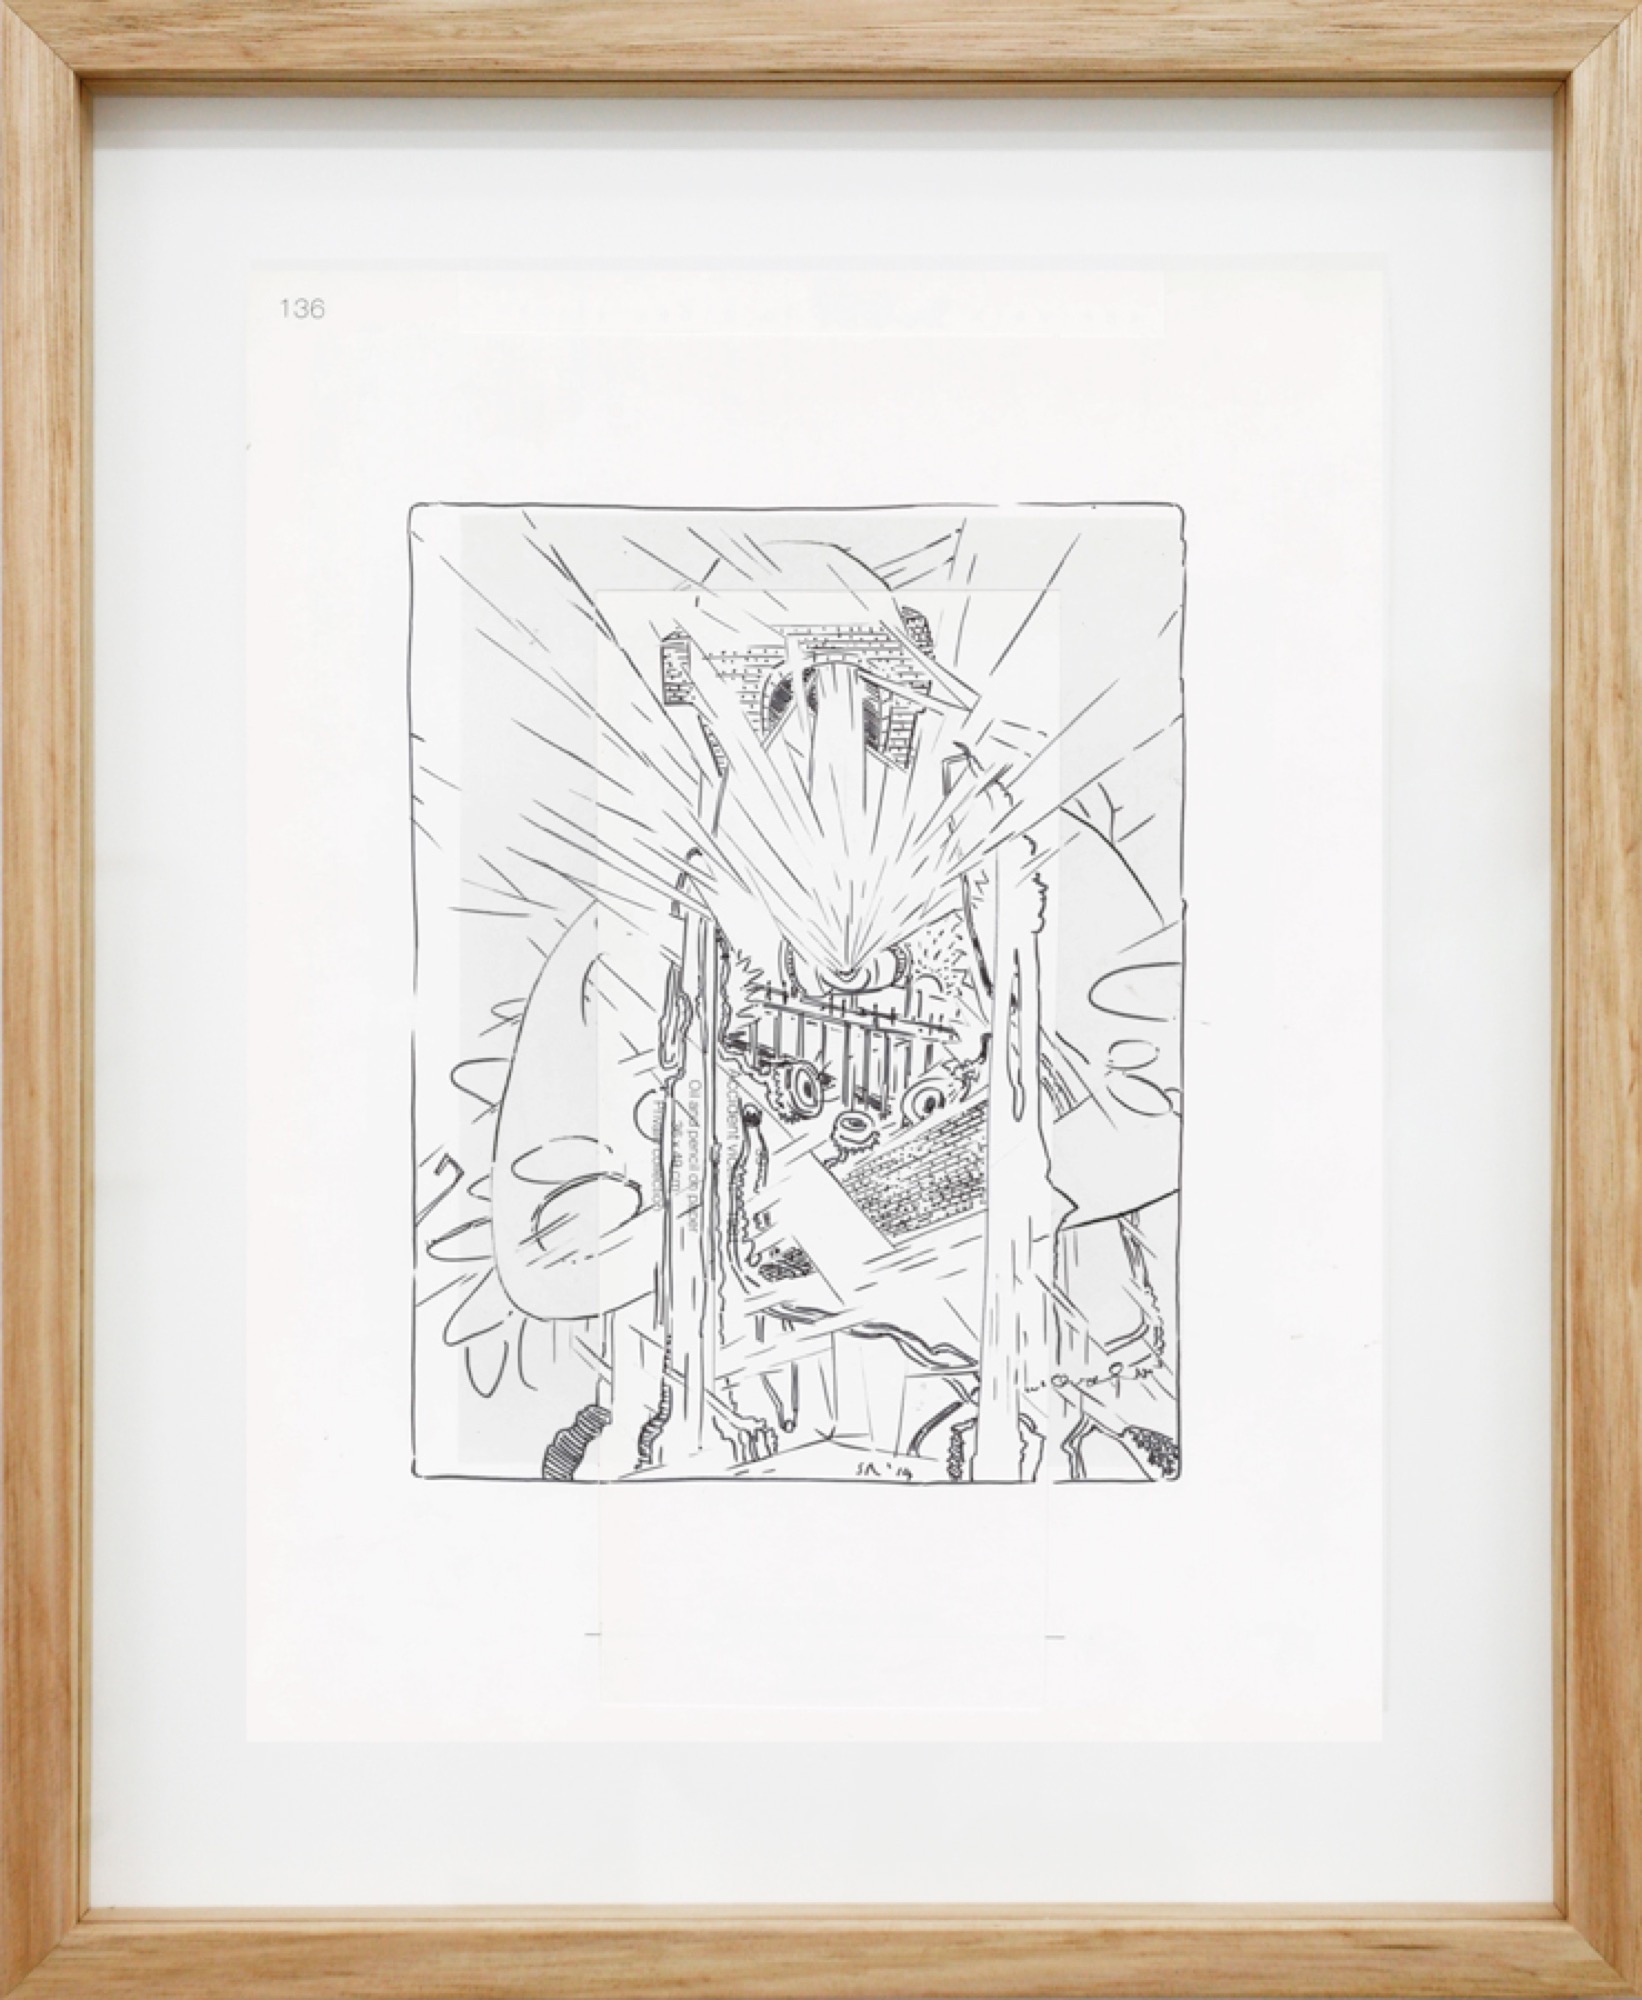 Stuart Ringholt, <em>Page 136</em>, 2014, Ink and collage on offset paper, 31.5 x 24 cm